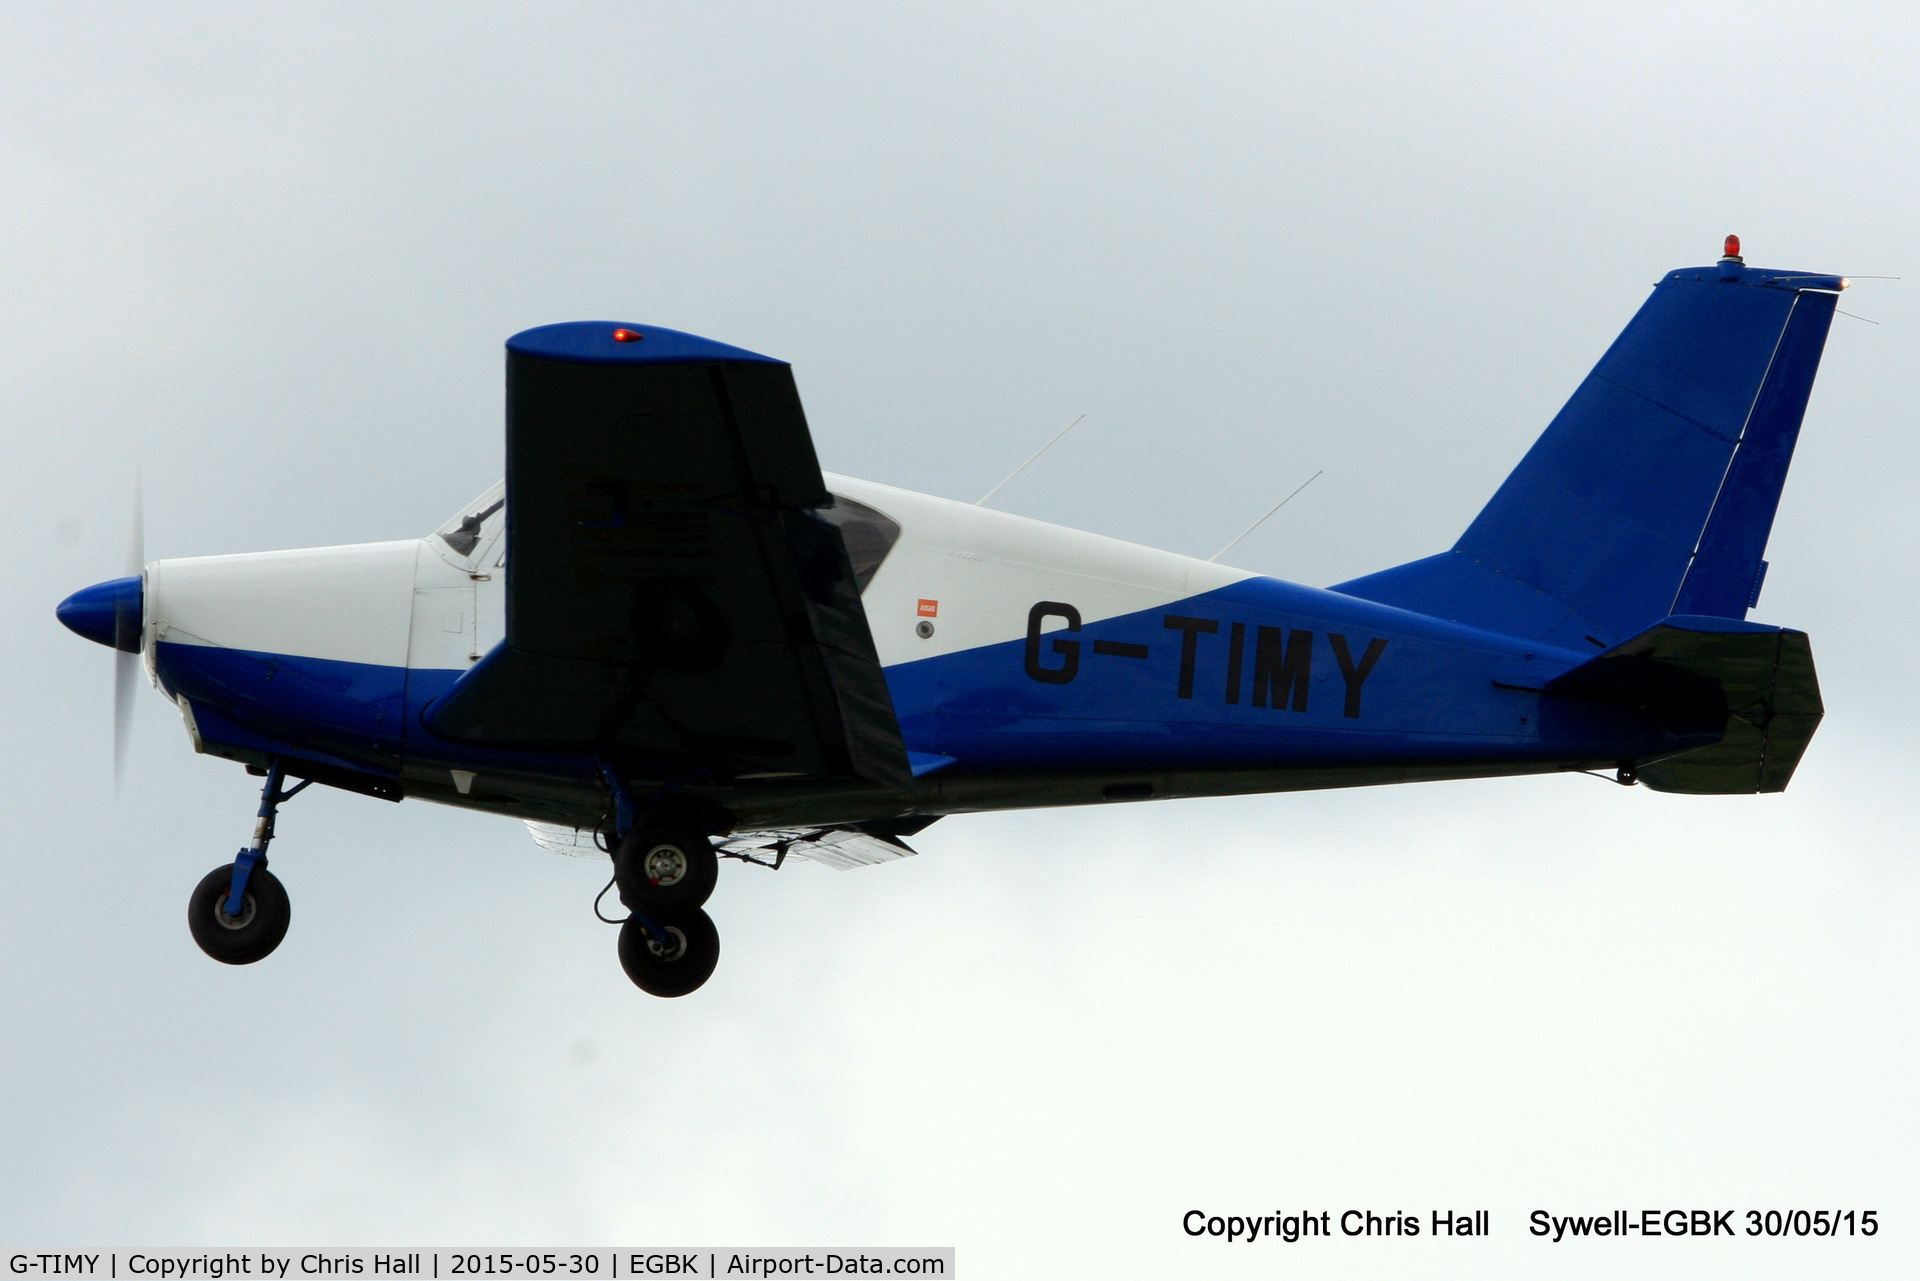 G-TIMY, 1964 Gardan GY-80-160 Horizon C/N 36, at Aeroexpo 2015